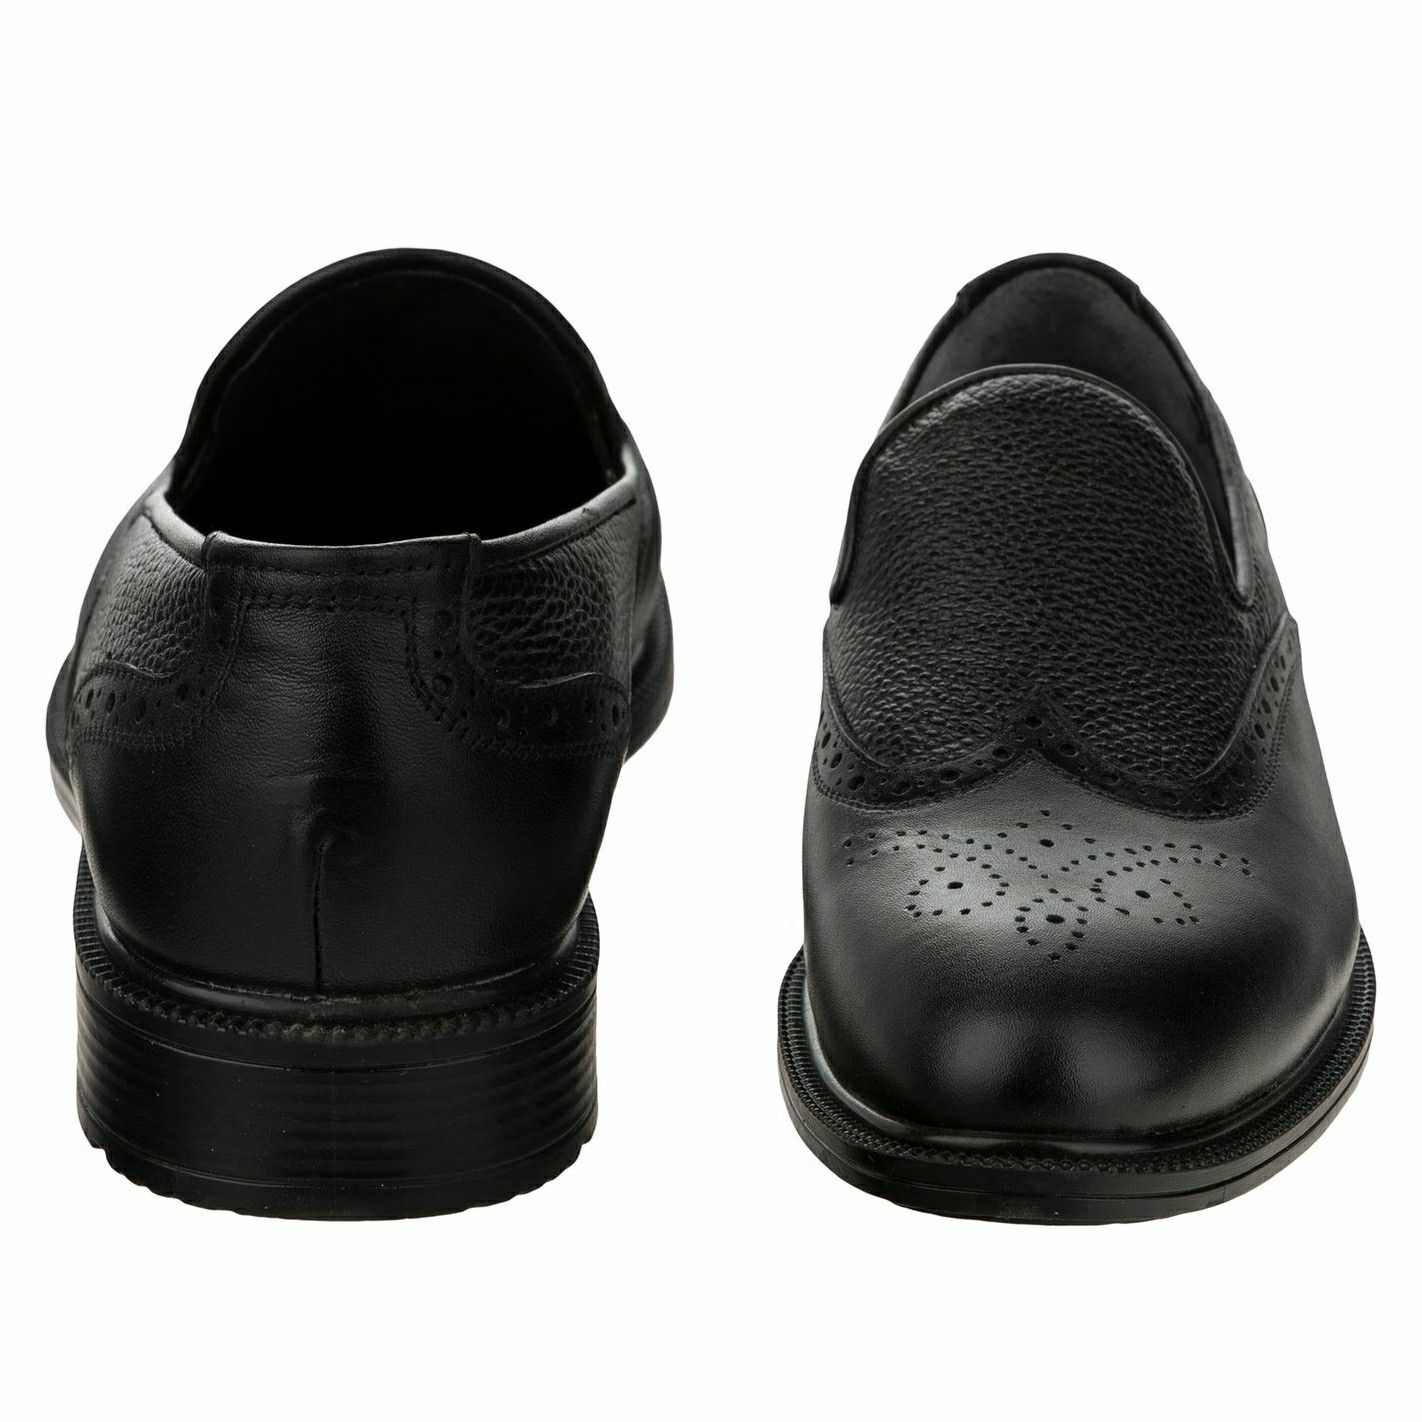 کفش مردانه بلوط مدل چرم طبیعی کد A503101 -  - 3